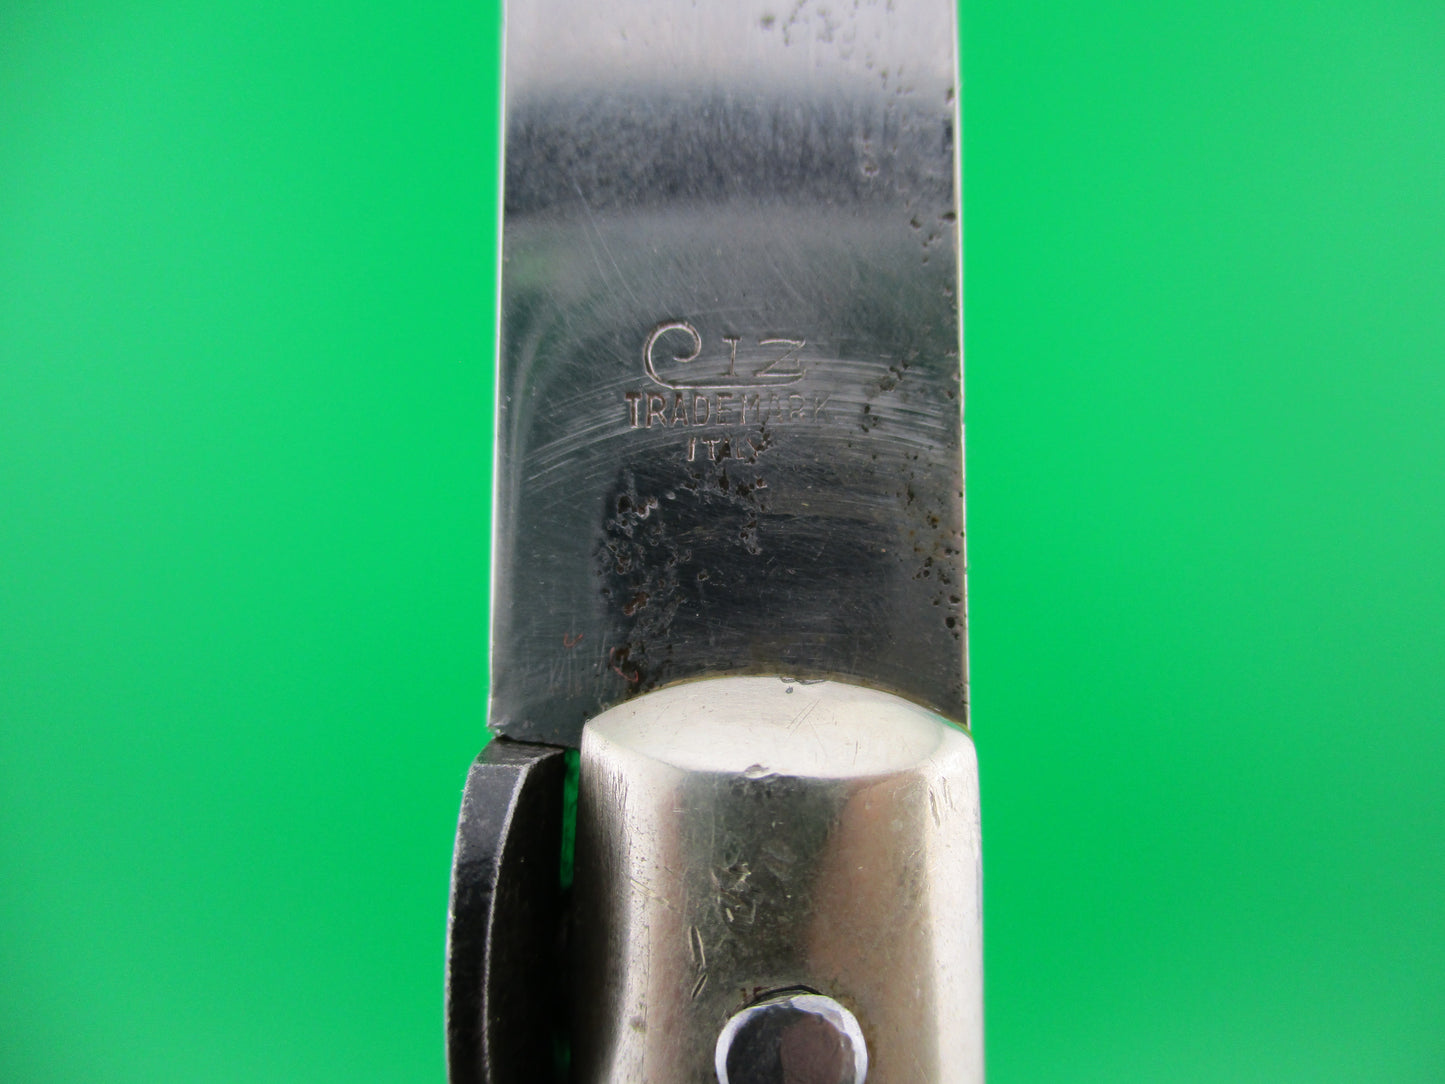 ZOPPIS INOX CIZ TRADEMARK ITALY 33cm Italian picklock 1950s vintage knife